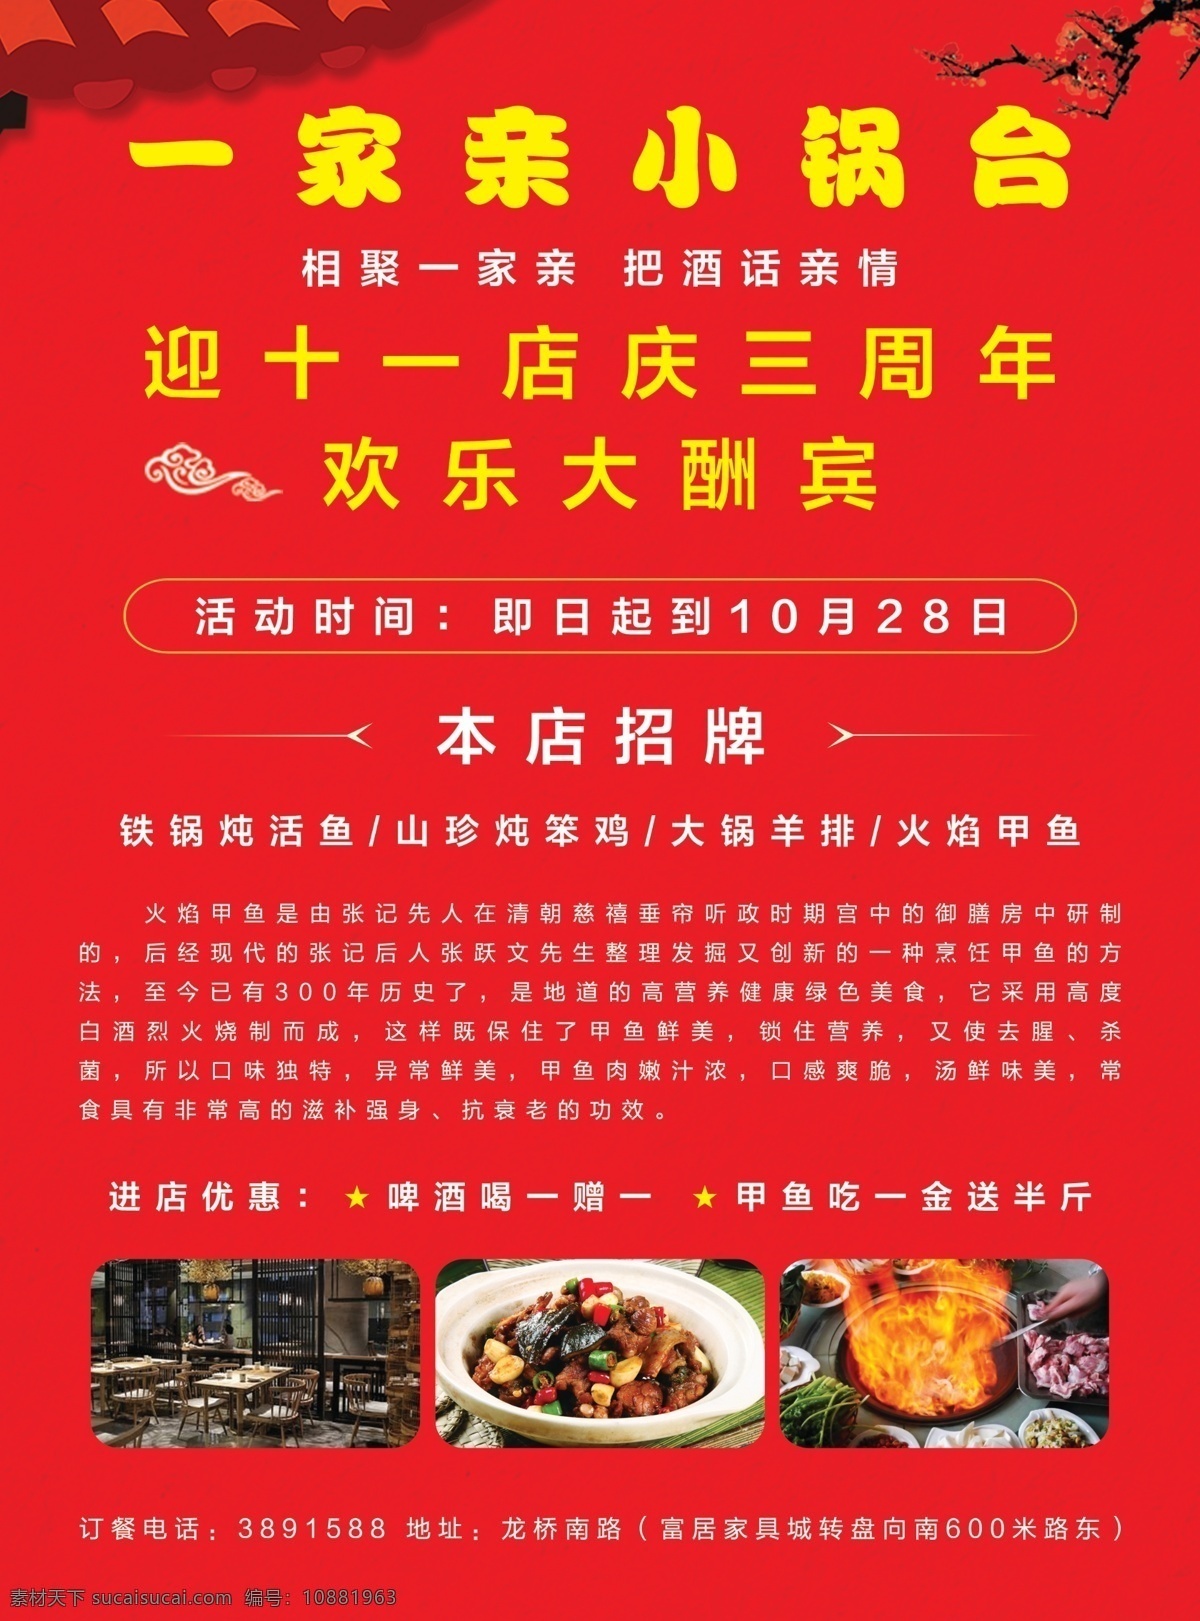 一家亲饭店 餐饮 活动 特色 中式 餐厅 饭店 酒店 海报 写真 喷绘 单页 平面